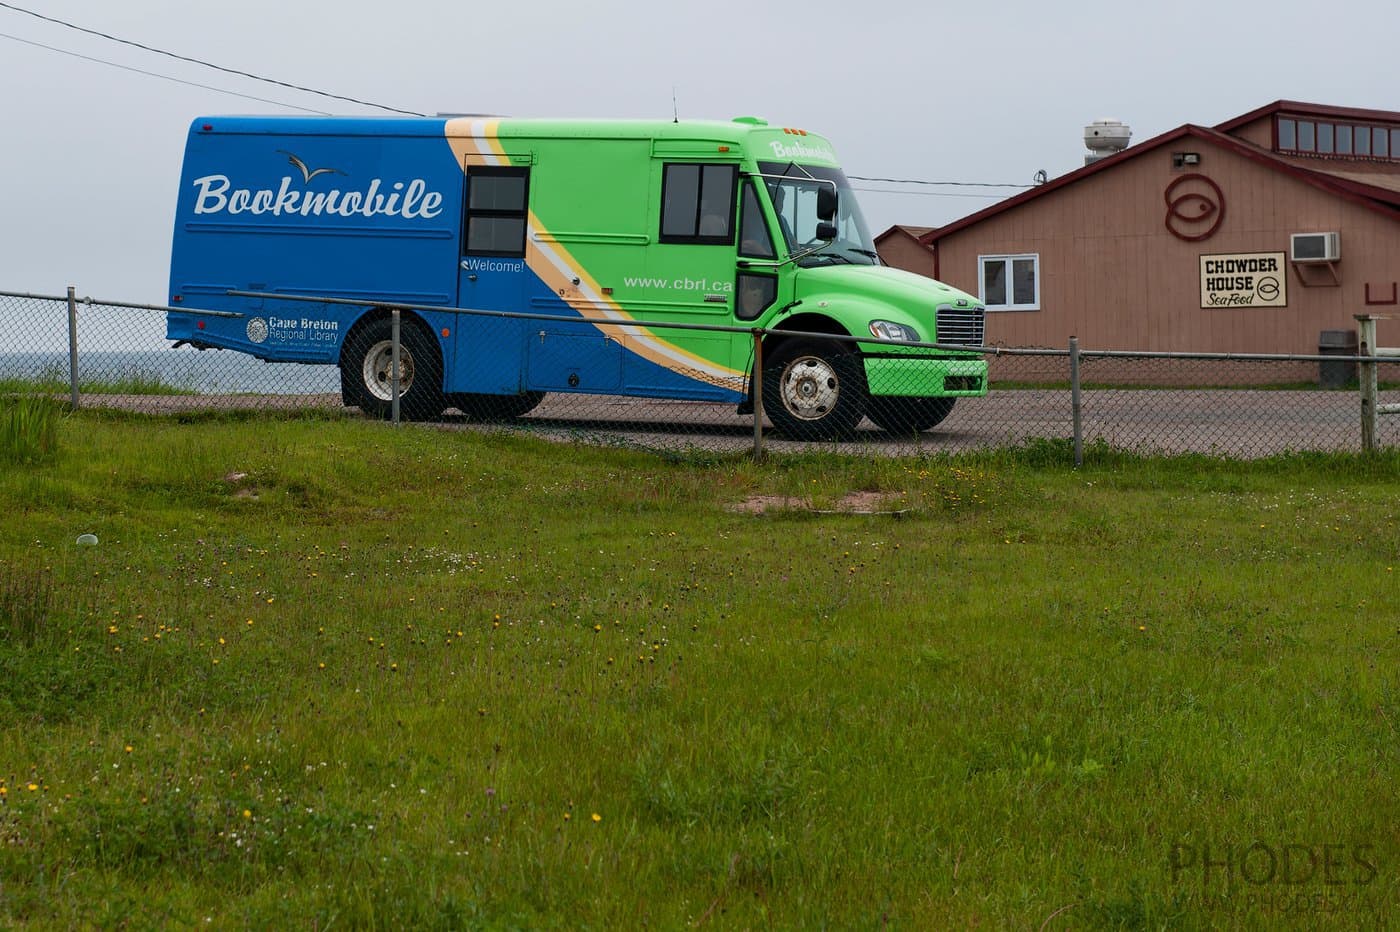 Bookmobile on Cape Breton Island in Nova Scotia